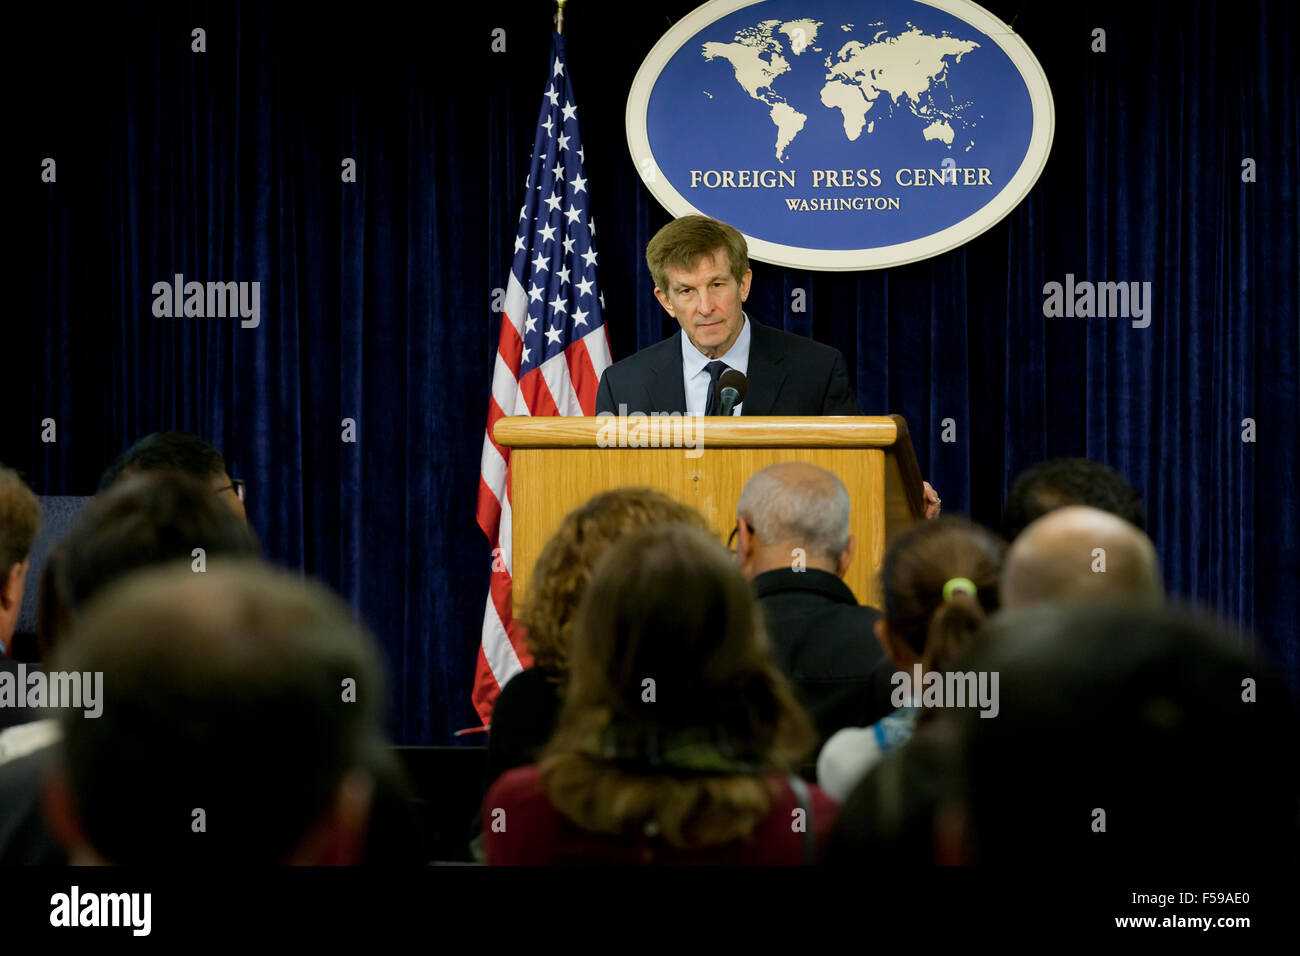 Professor Allan Lichtman der American University, anlässlich uns State Department ausländische Pressecenter zu den Wahlen von 2016 Stockfoto